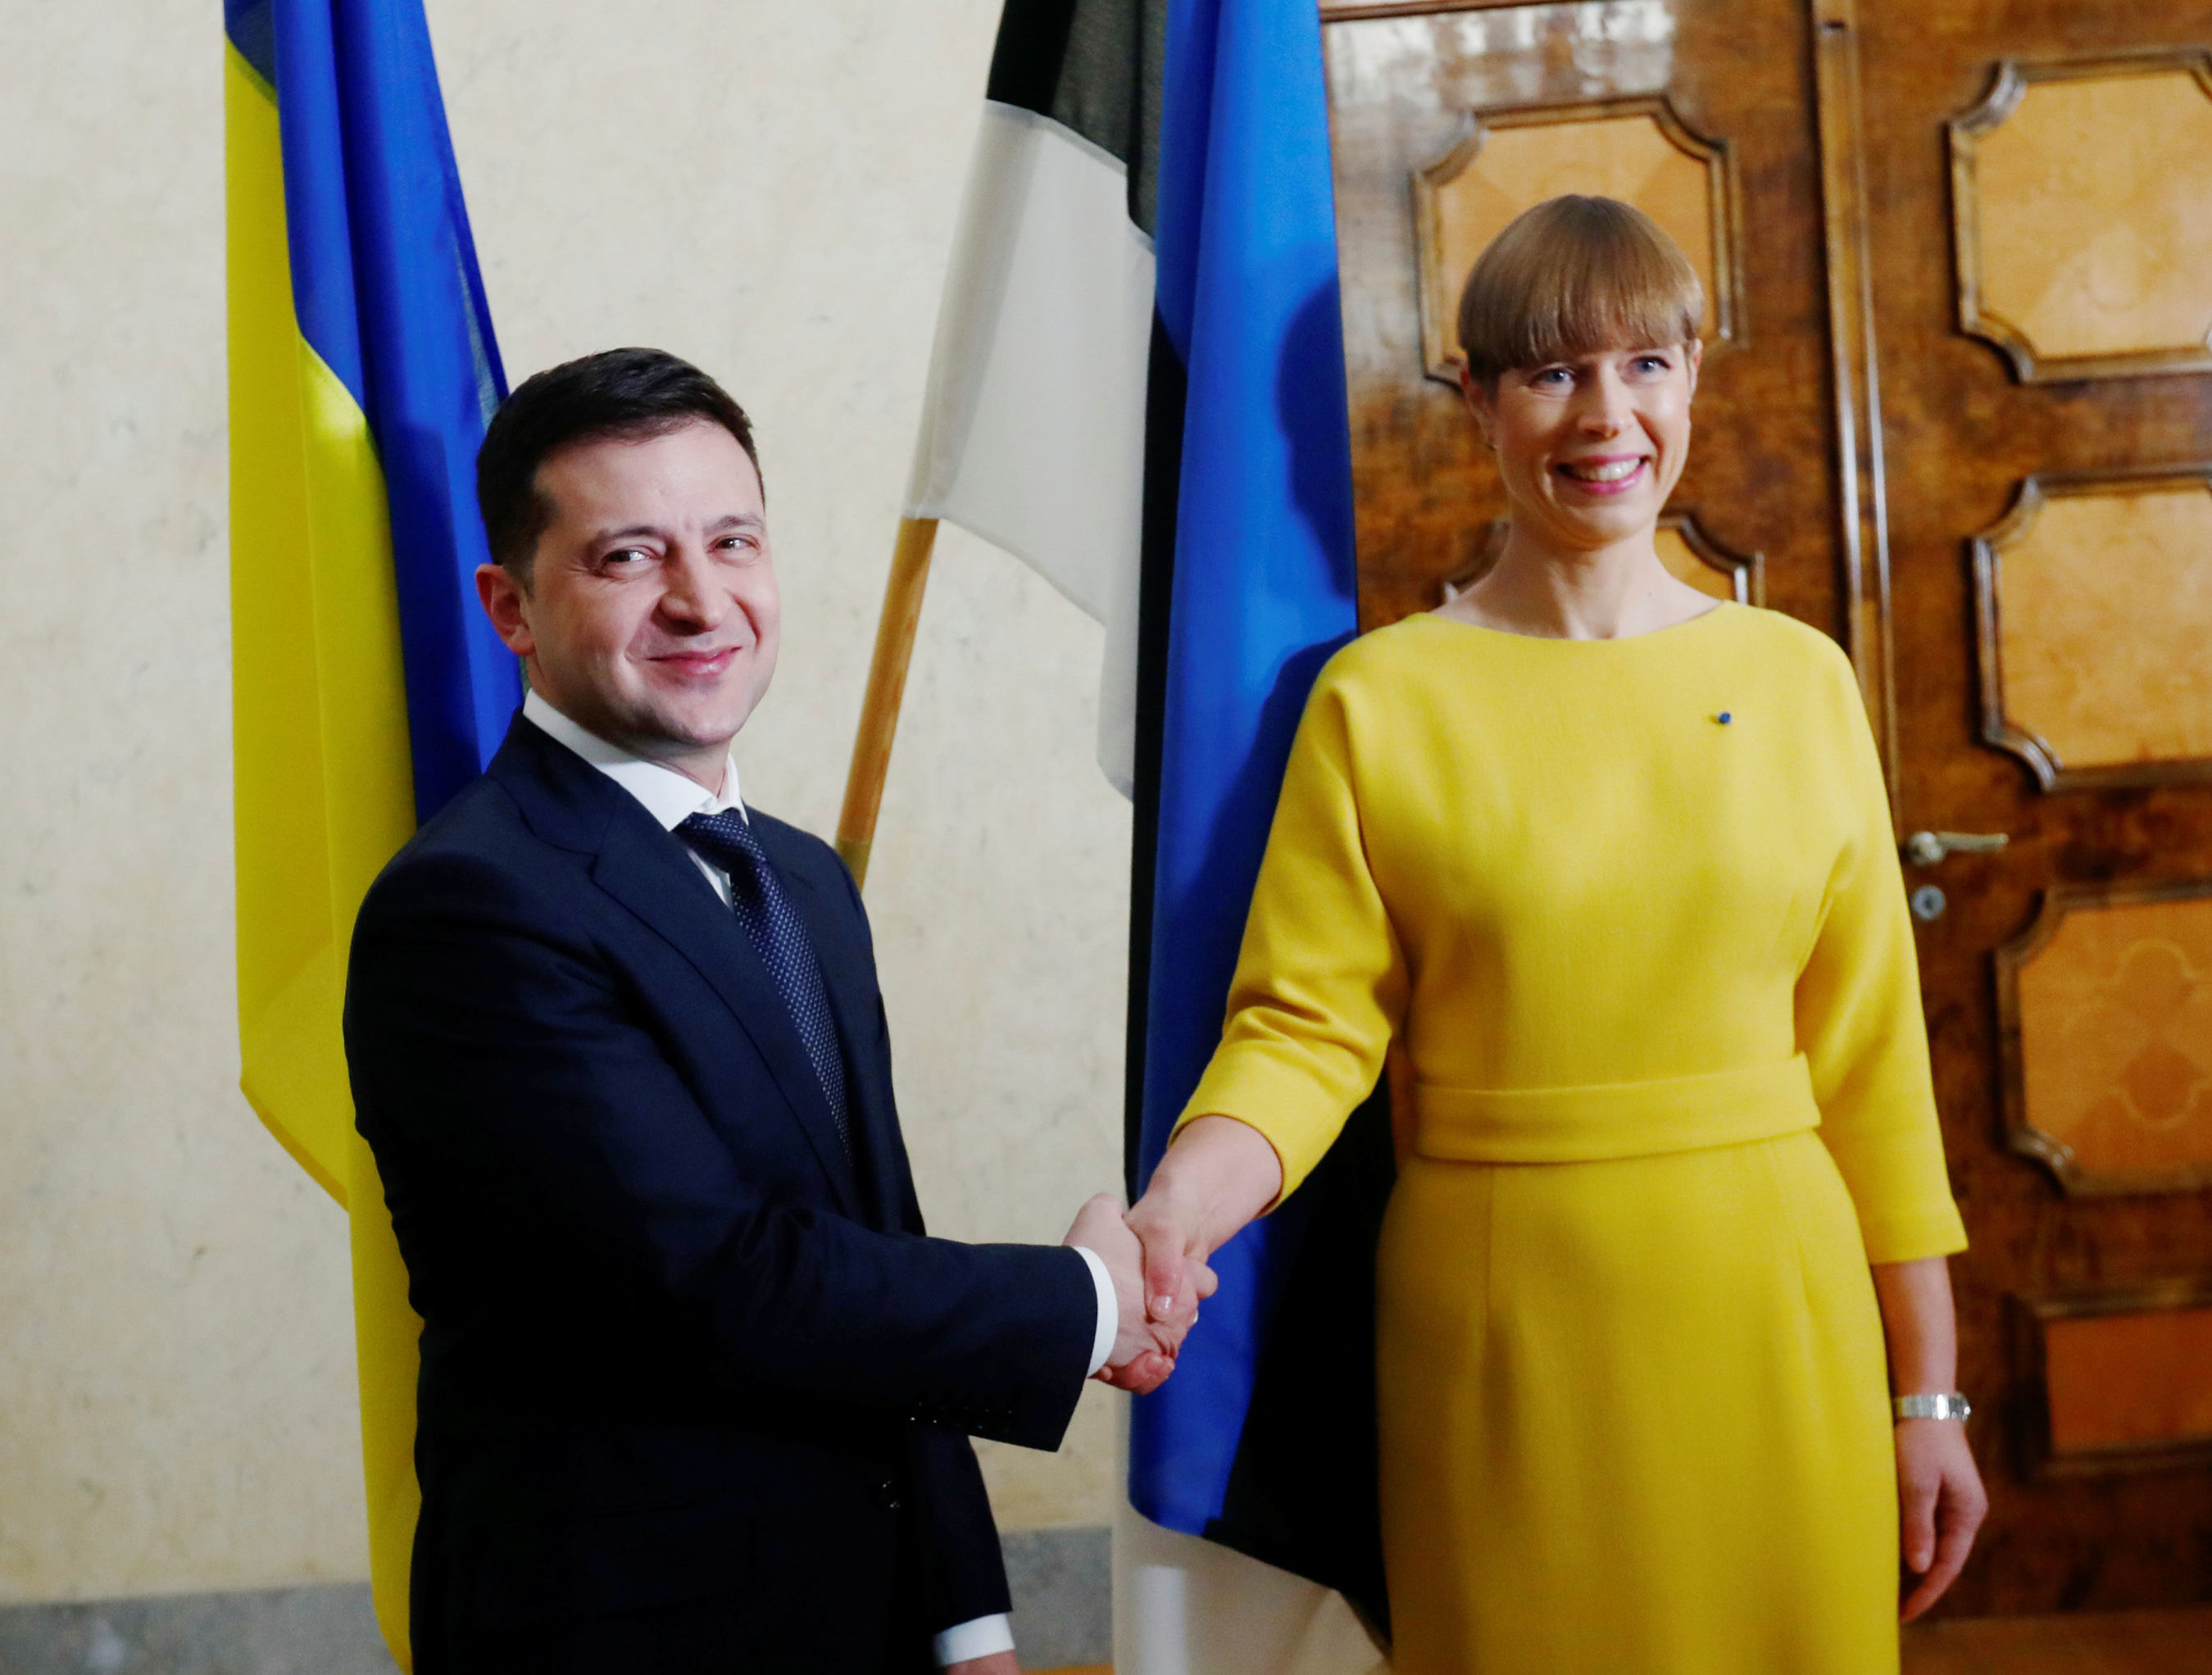 Встреча президента Эстонии Керсти Кальюлайд и президента Украины Владимира Зеленского, Таллин , 26 ноября 2019